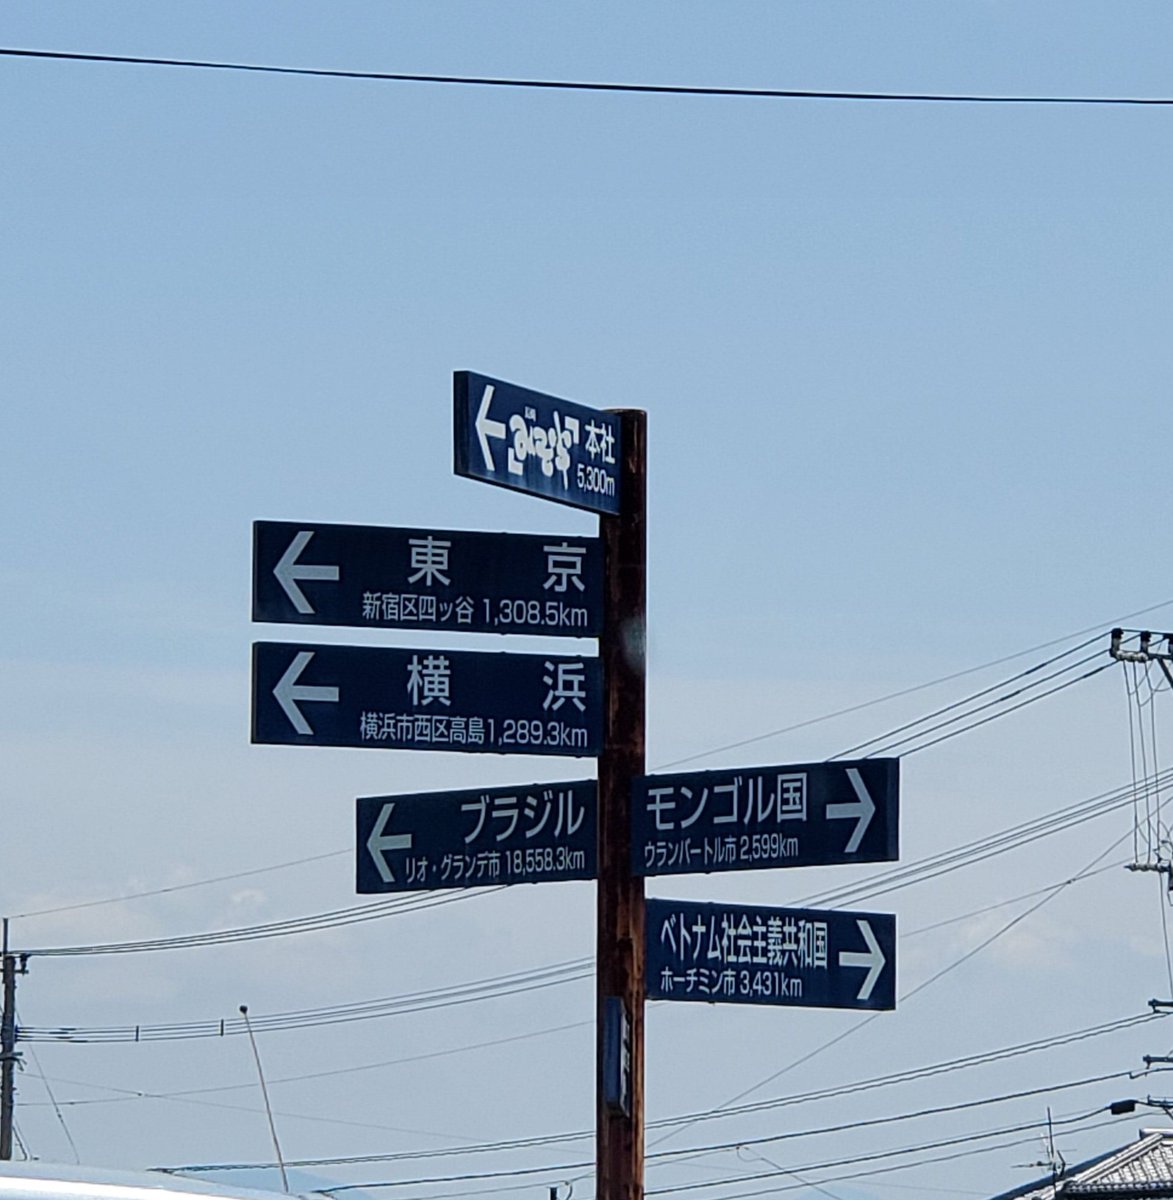 この標識いいね
場所は、長崎県諫早市
月の引力が見えるまち
太良町過ぎてーずーっと先～😆
何故この標識を付けたのか⁉️
気になる☺️
発見らくちゃく で調べてみて～🎶気になるぅ～(笑)